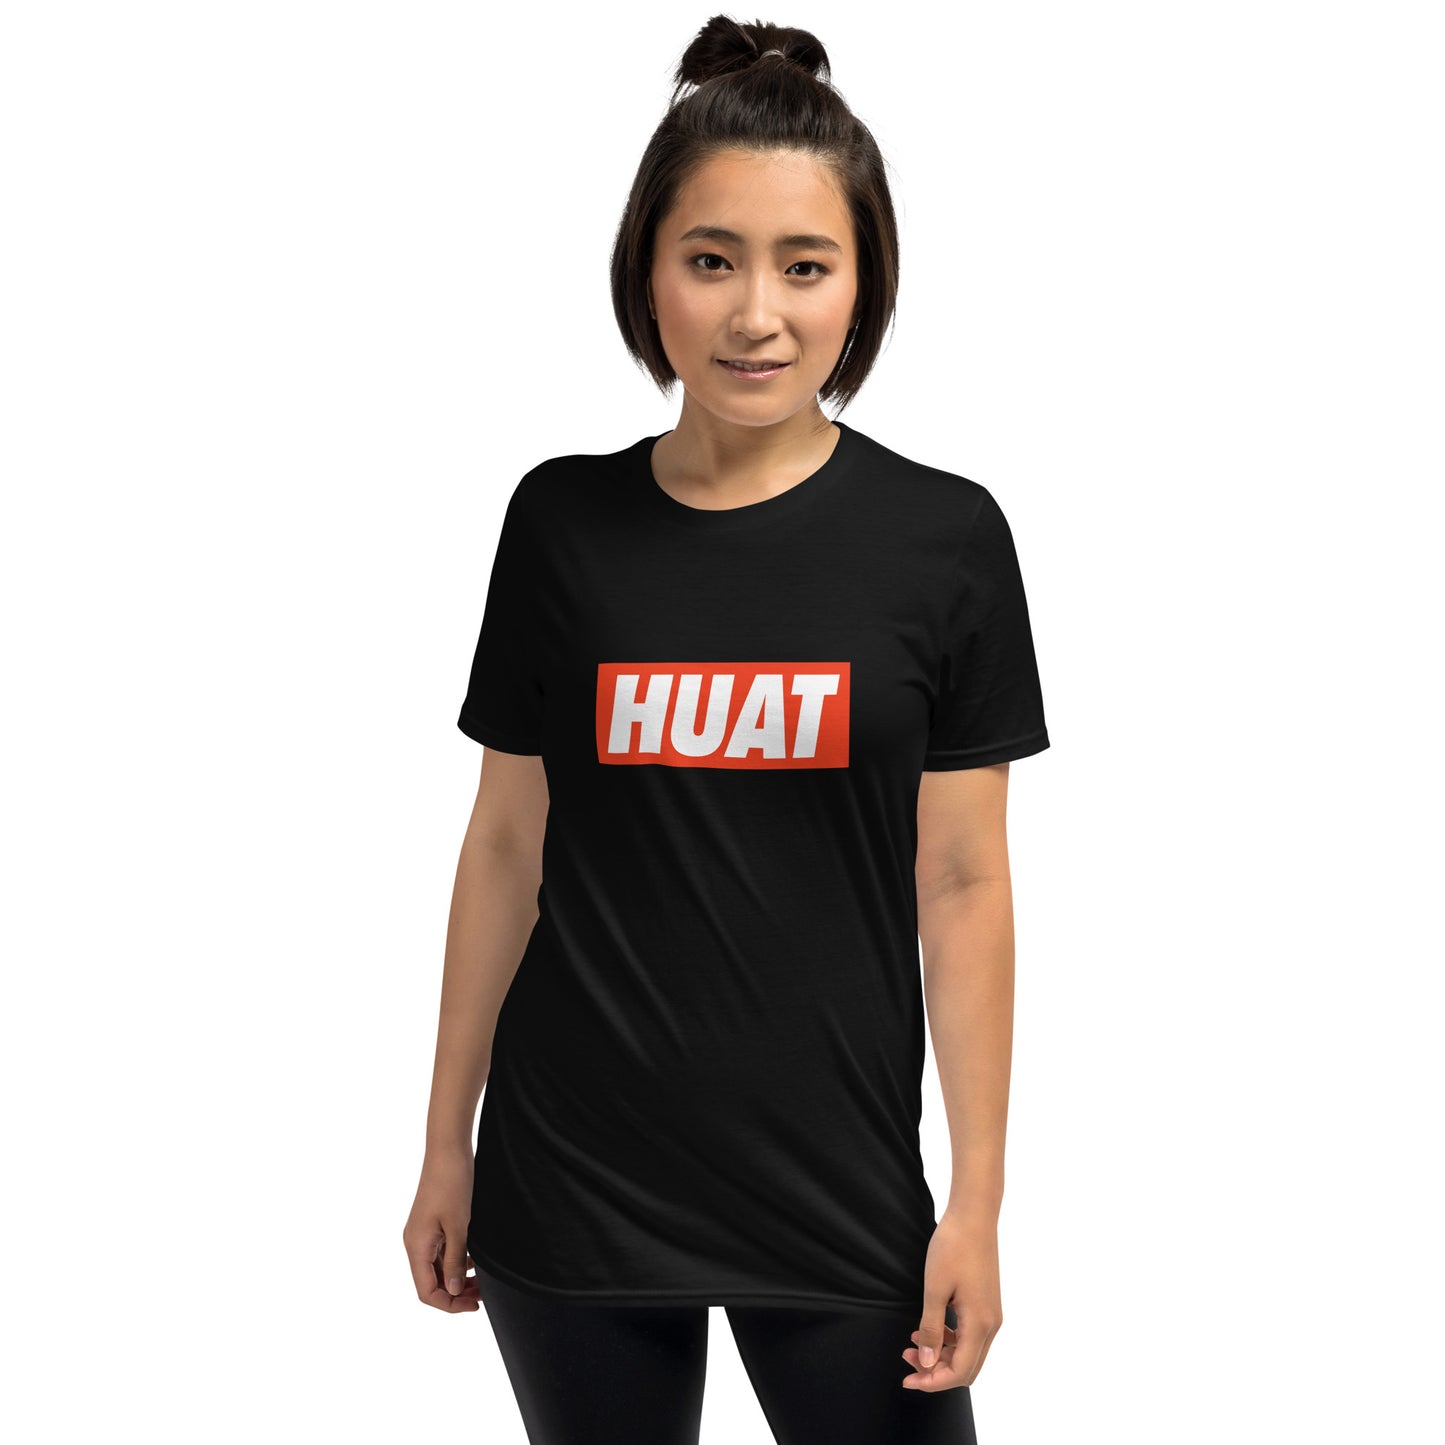 Huat - Black Tee